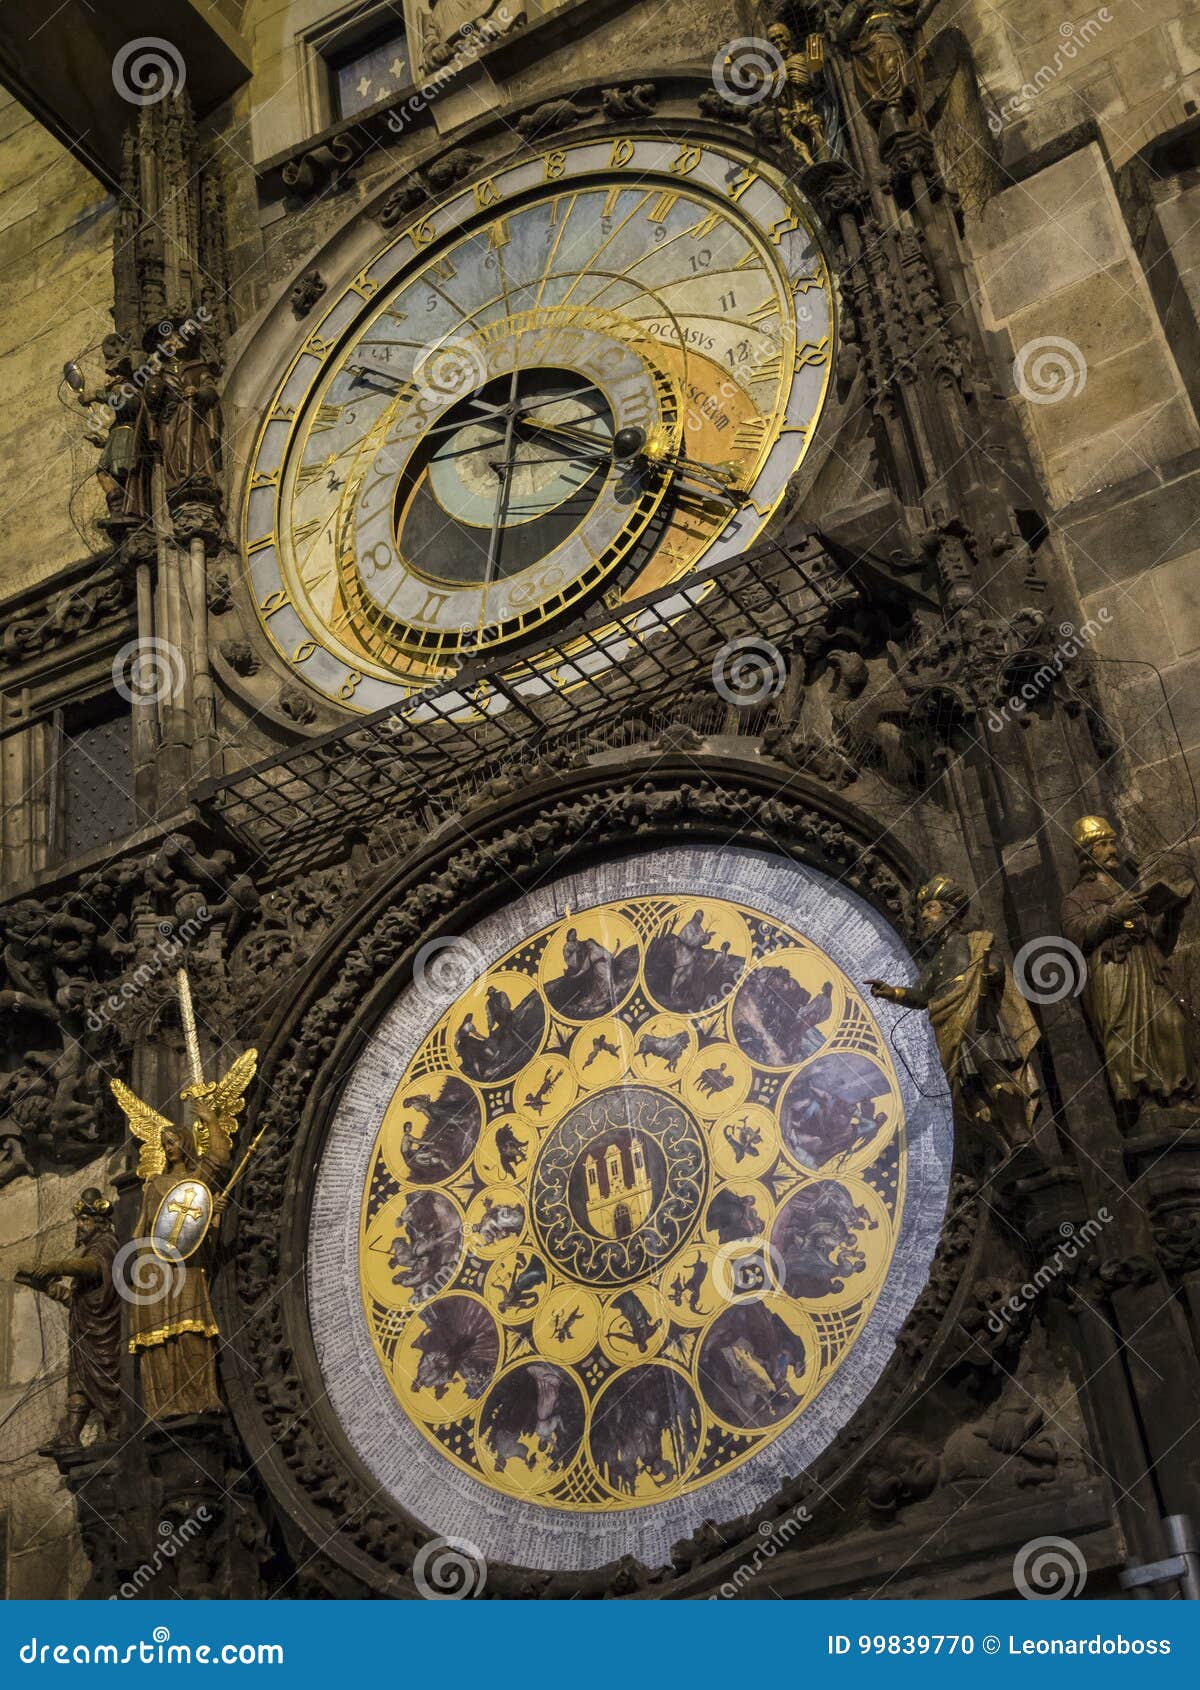 astronomic clock praga